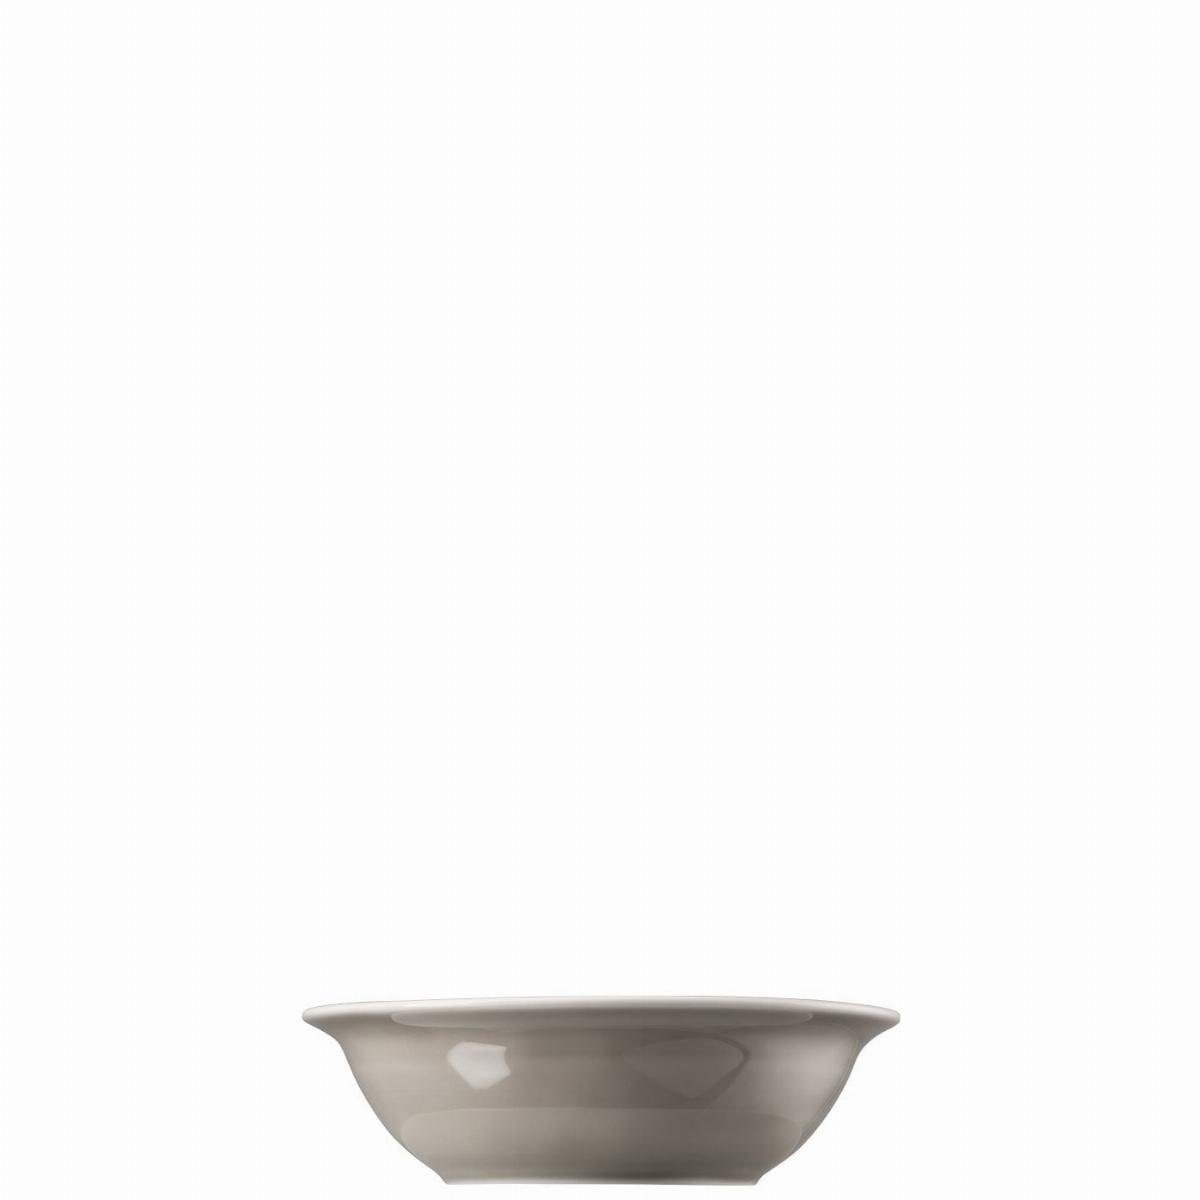 Thomas Porzellan Schüssel Bowl 17 cm - TREND moon grey - 2 Stück